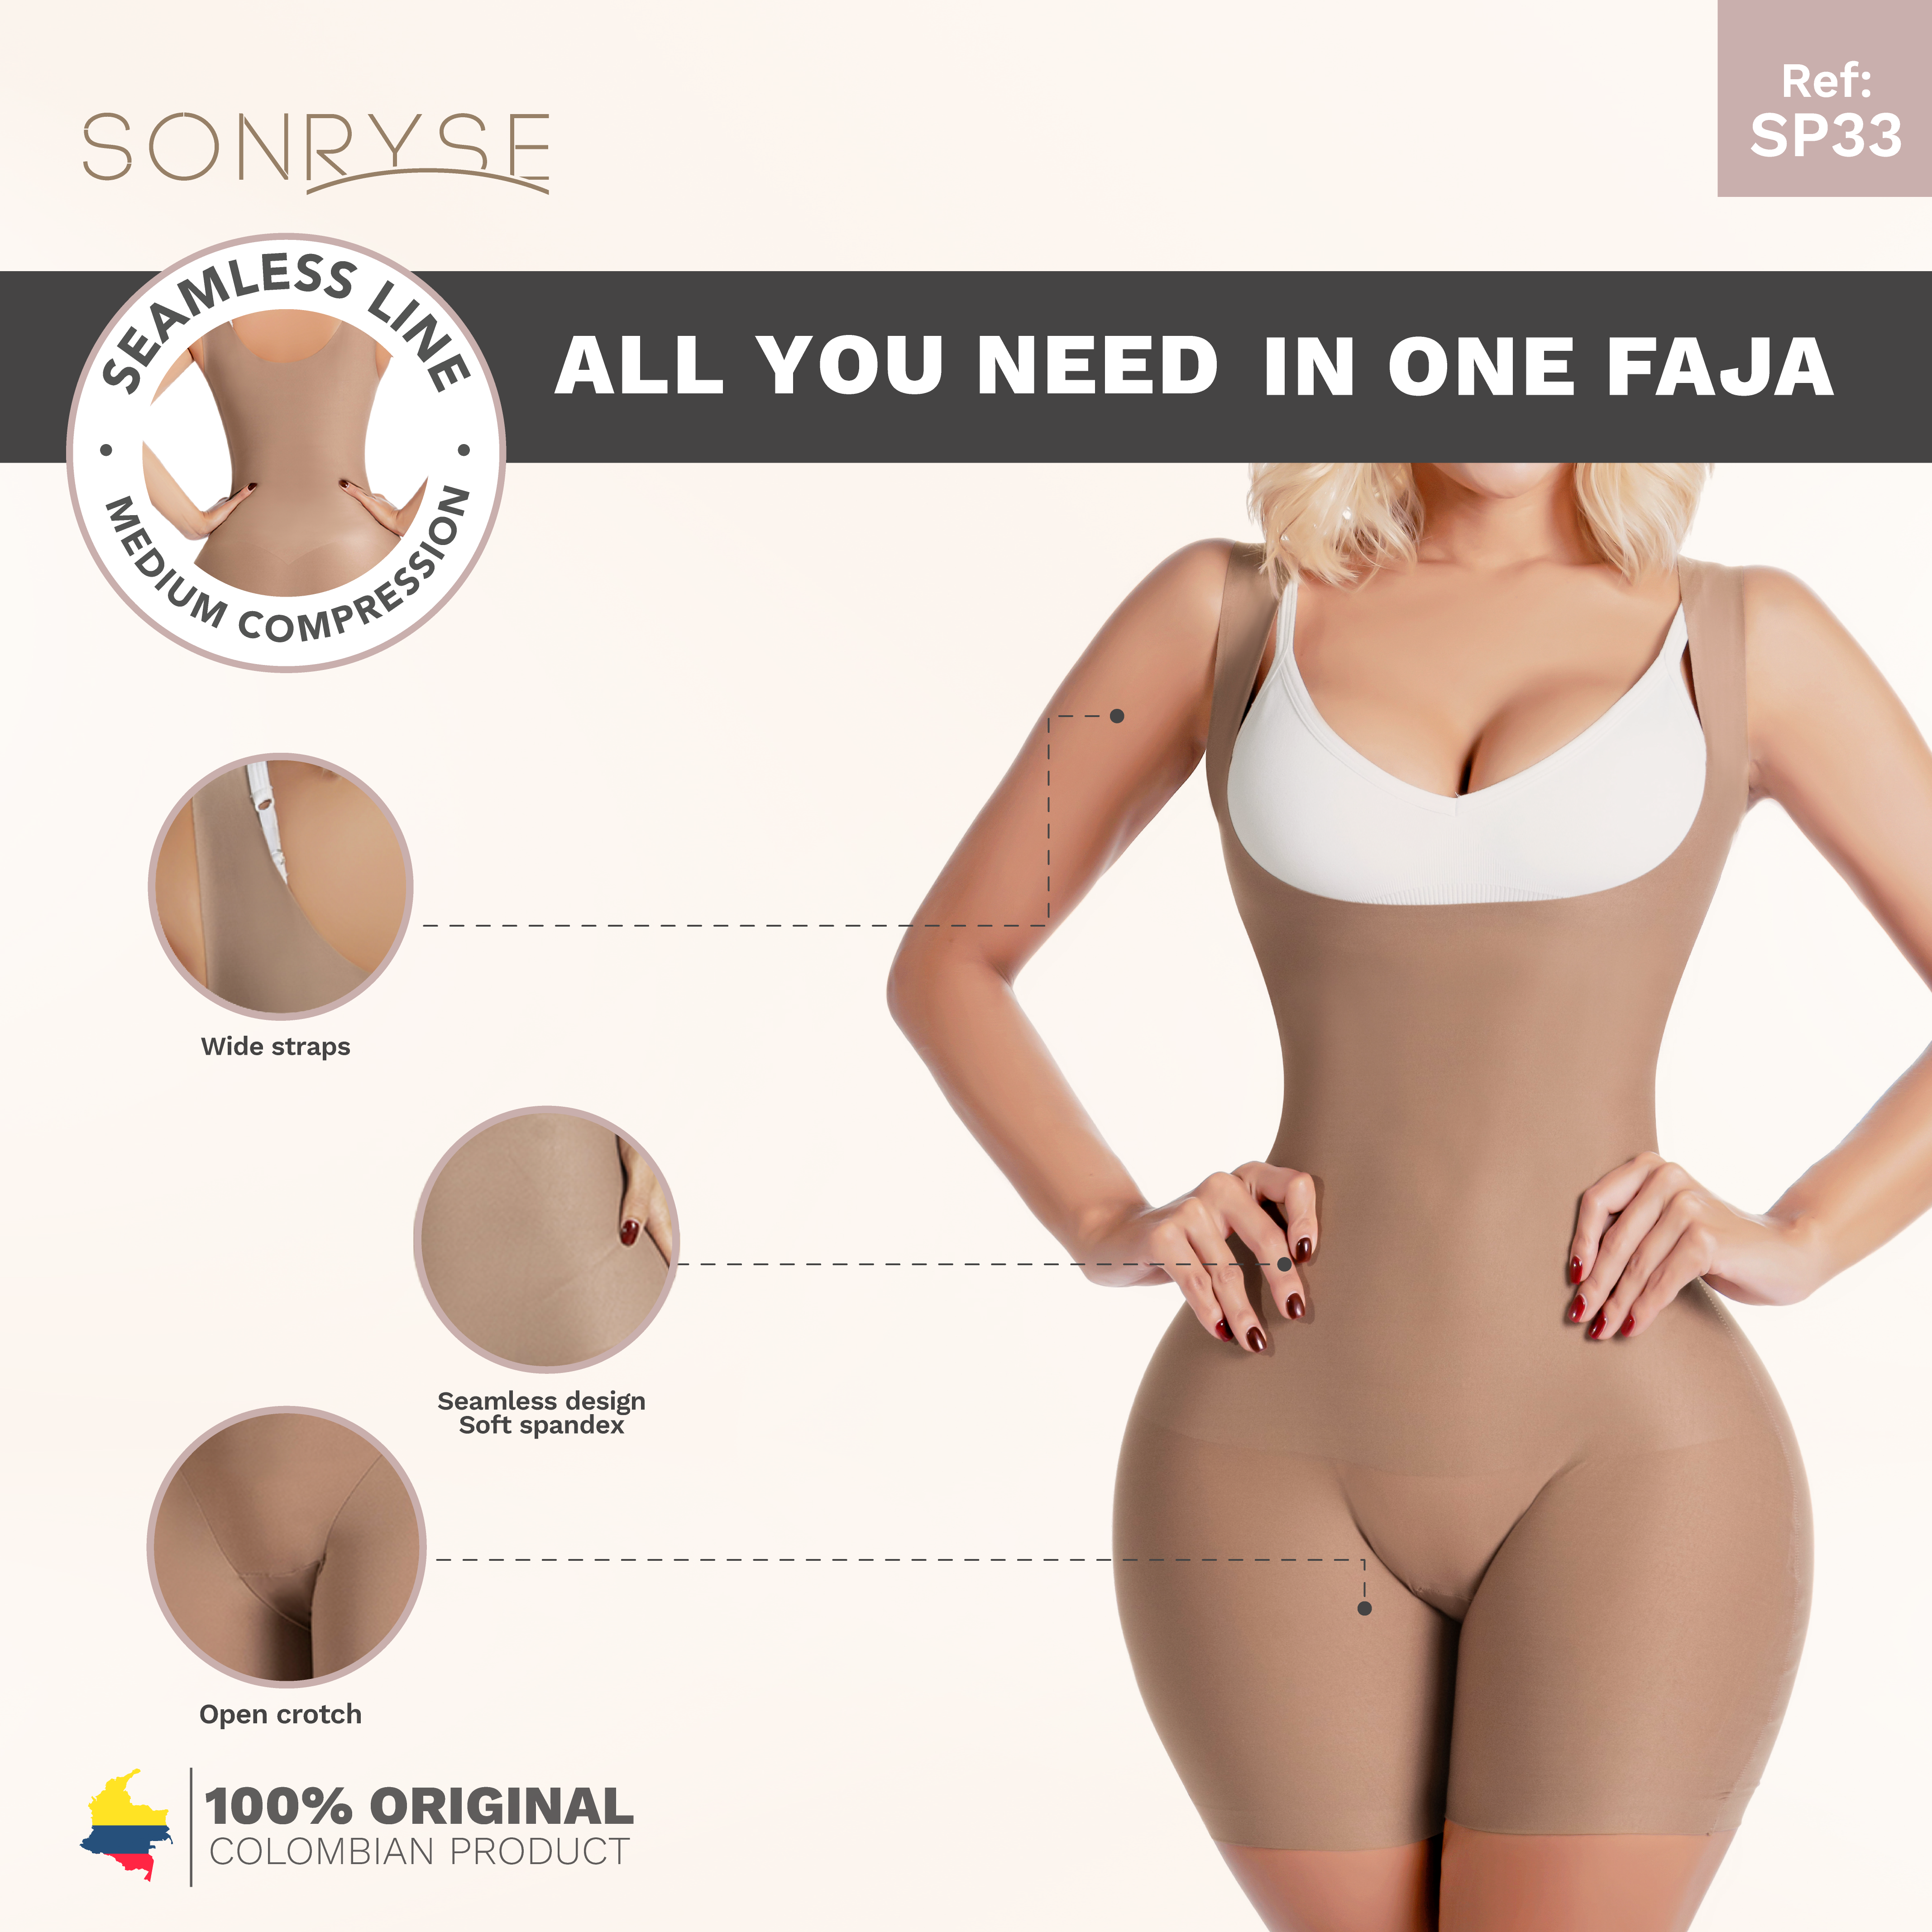 Sonryse SP33NC, Colombian Faja Bodysuit Shaper for Women